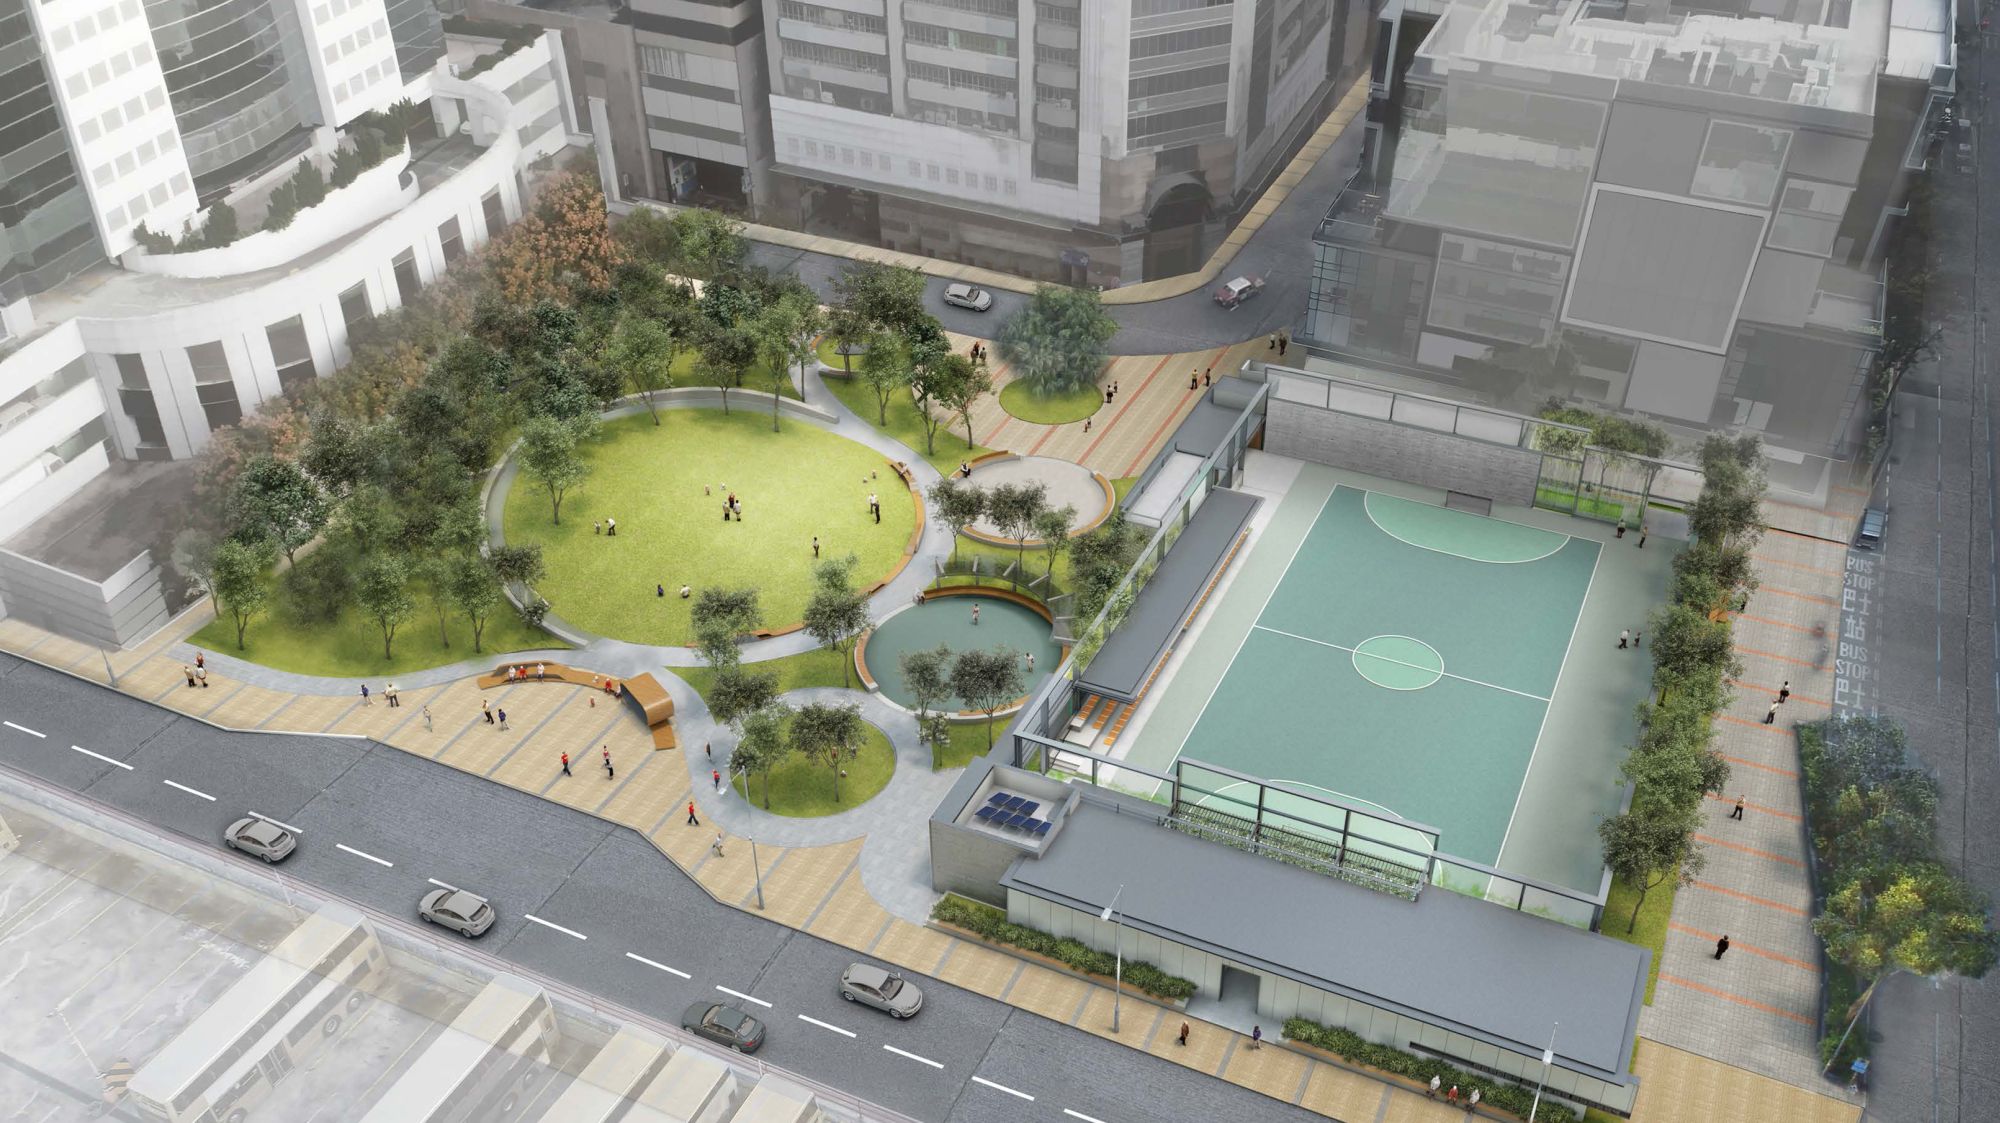 九龙东未来将有多个休憩空间相继落成，包括临华街游乐场改善工程和活化翠屏河项目。图标临华街游乐场工程完成后的构想图。